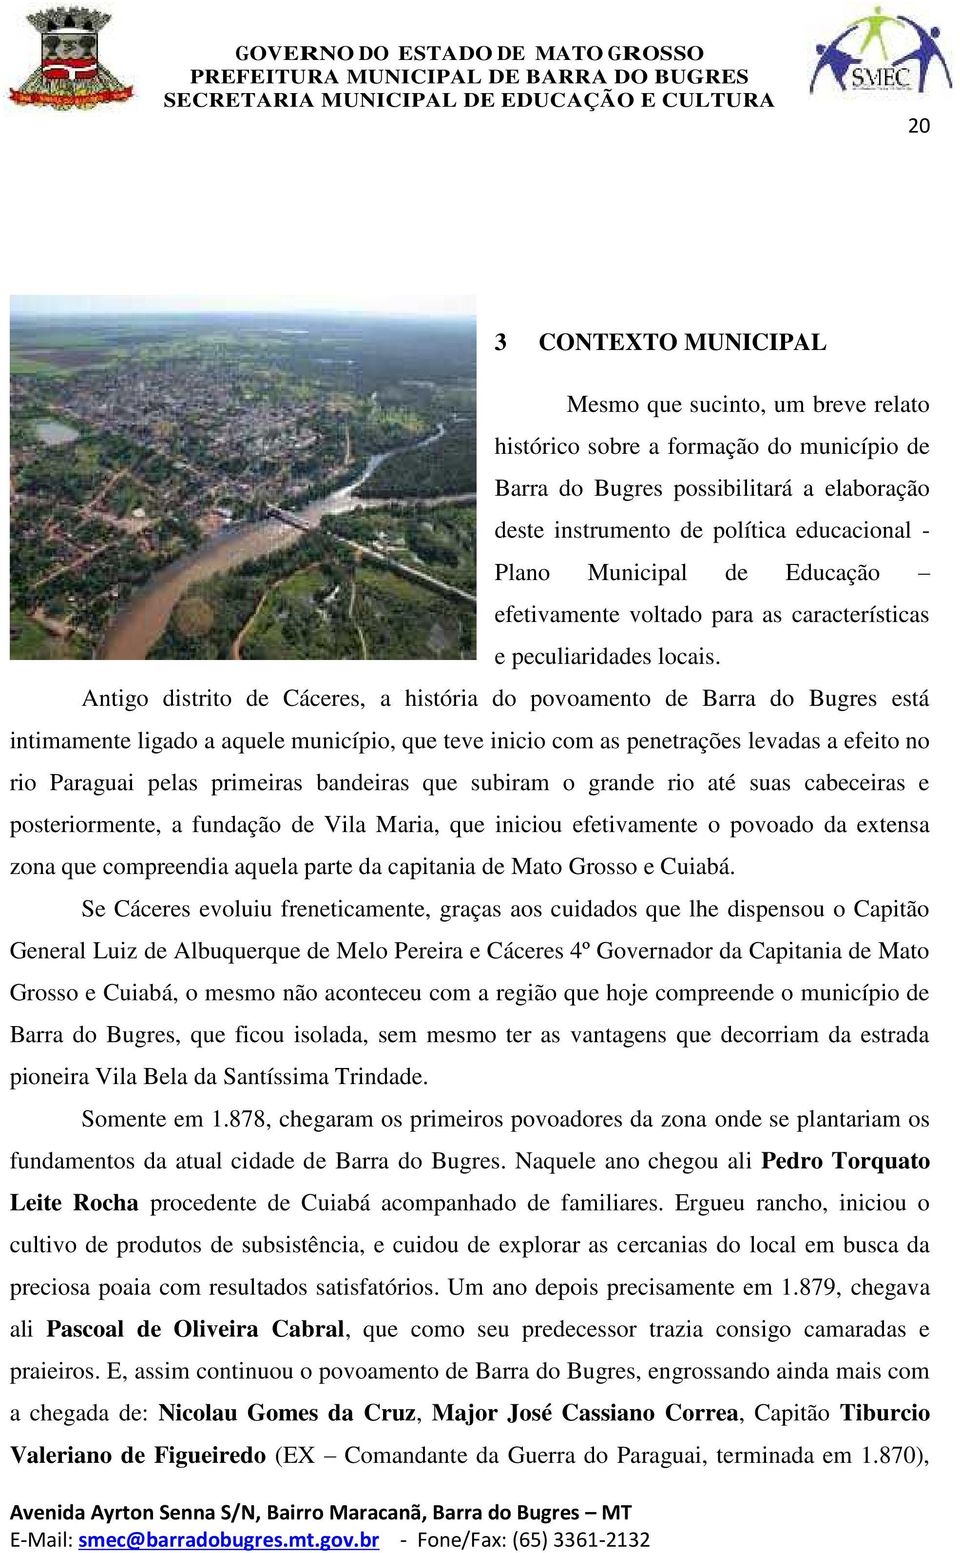 Antigo distrito de Cáceres, a história do povoamento de Barra do Bugres está intimamente ligado a aquele município, que teve inicio com as penetrações levadas a efeito no rio Paraguai pelas primeiras